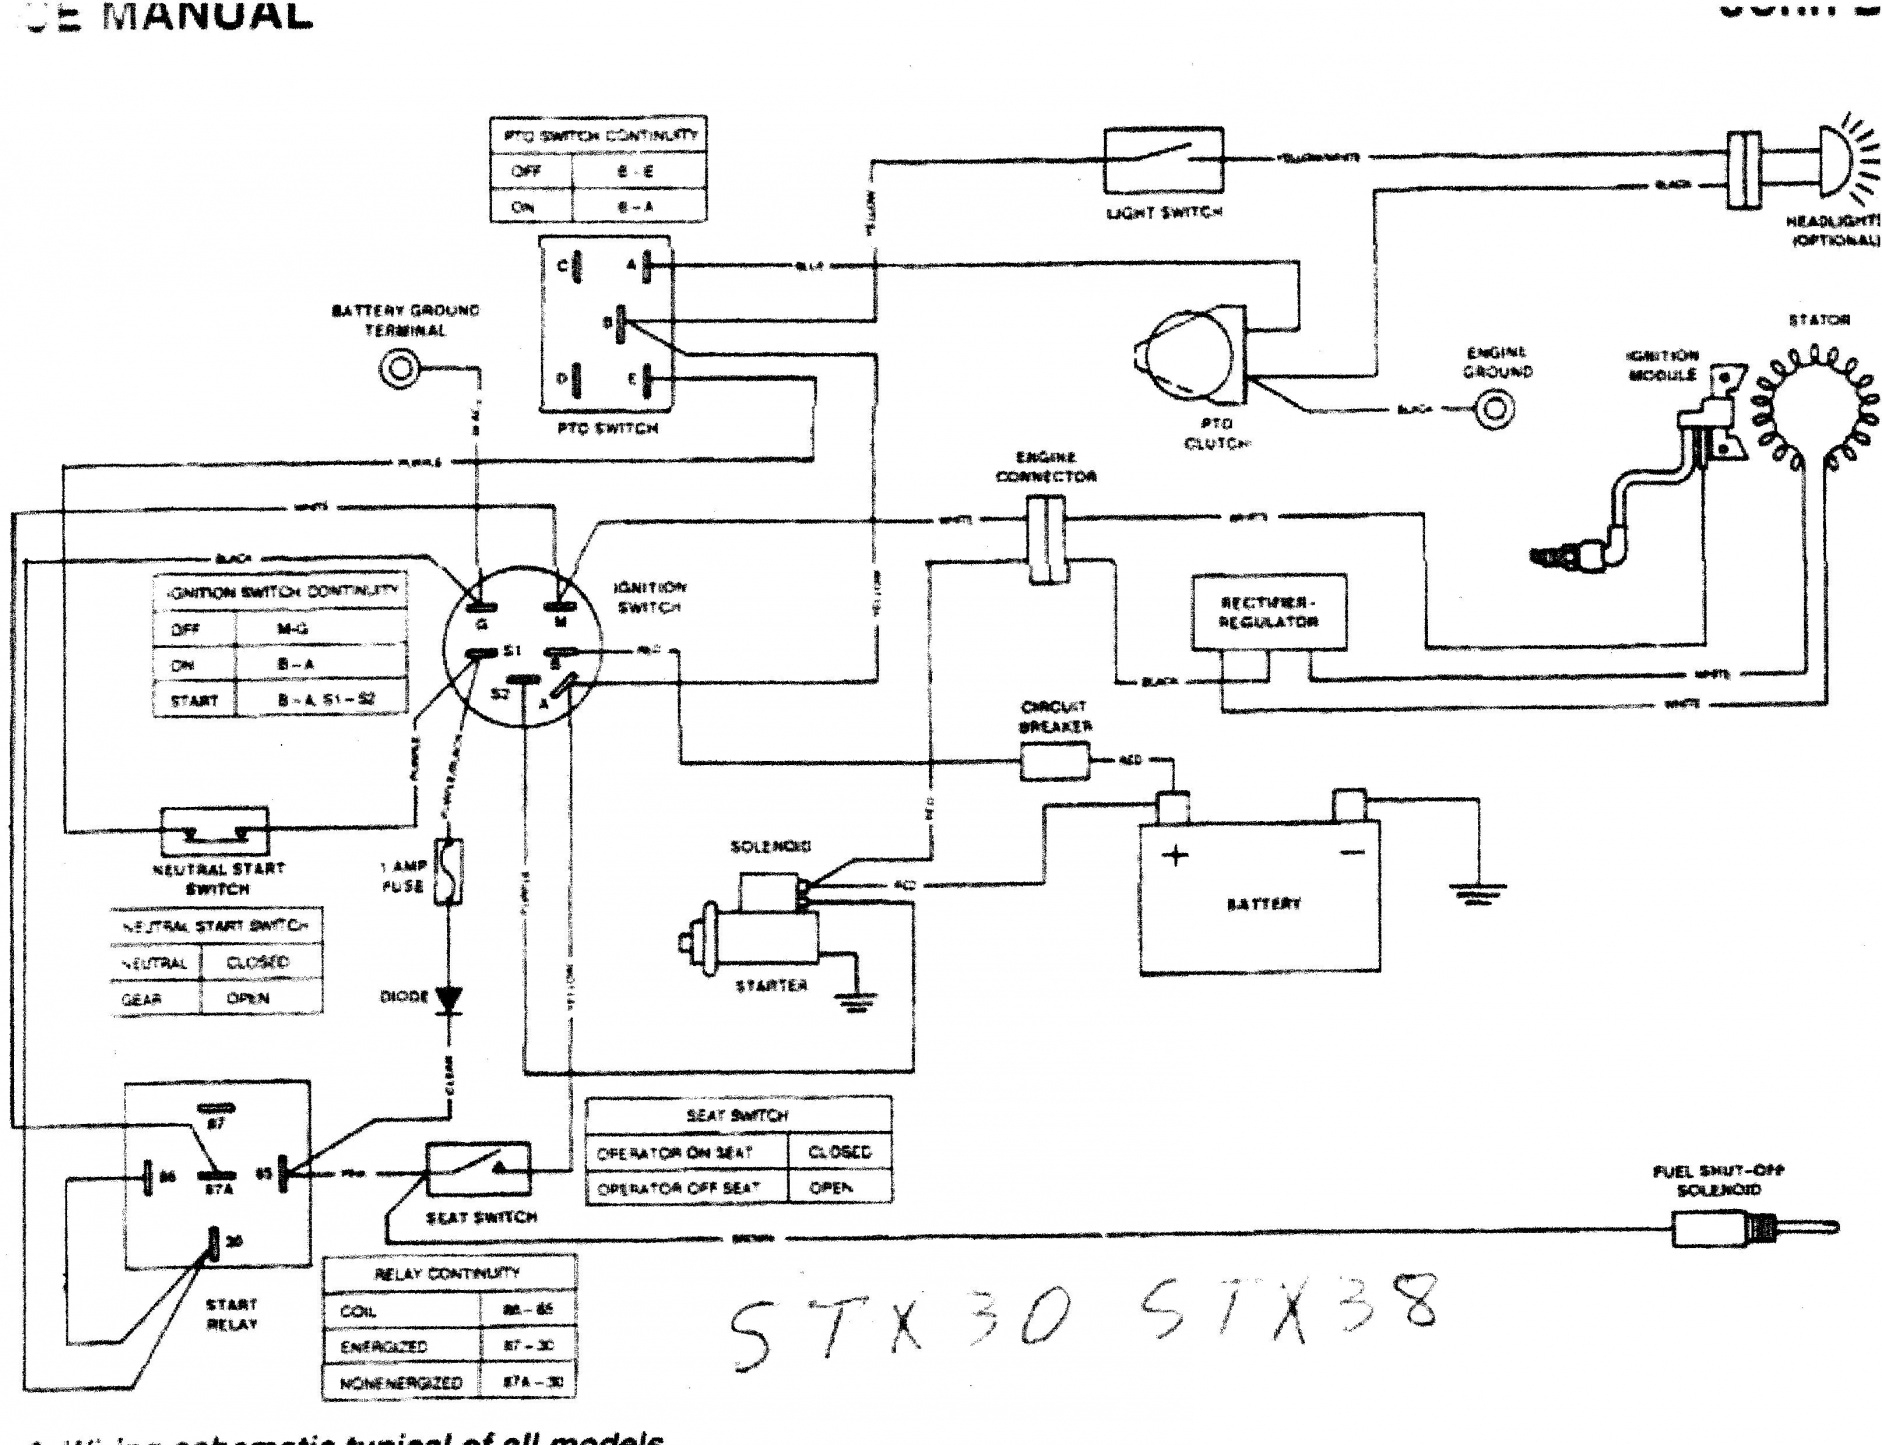 John Deere 4430 Wiring Schematic | Wiring Diagram - John Deere 318 Wiring Diagram